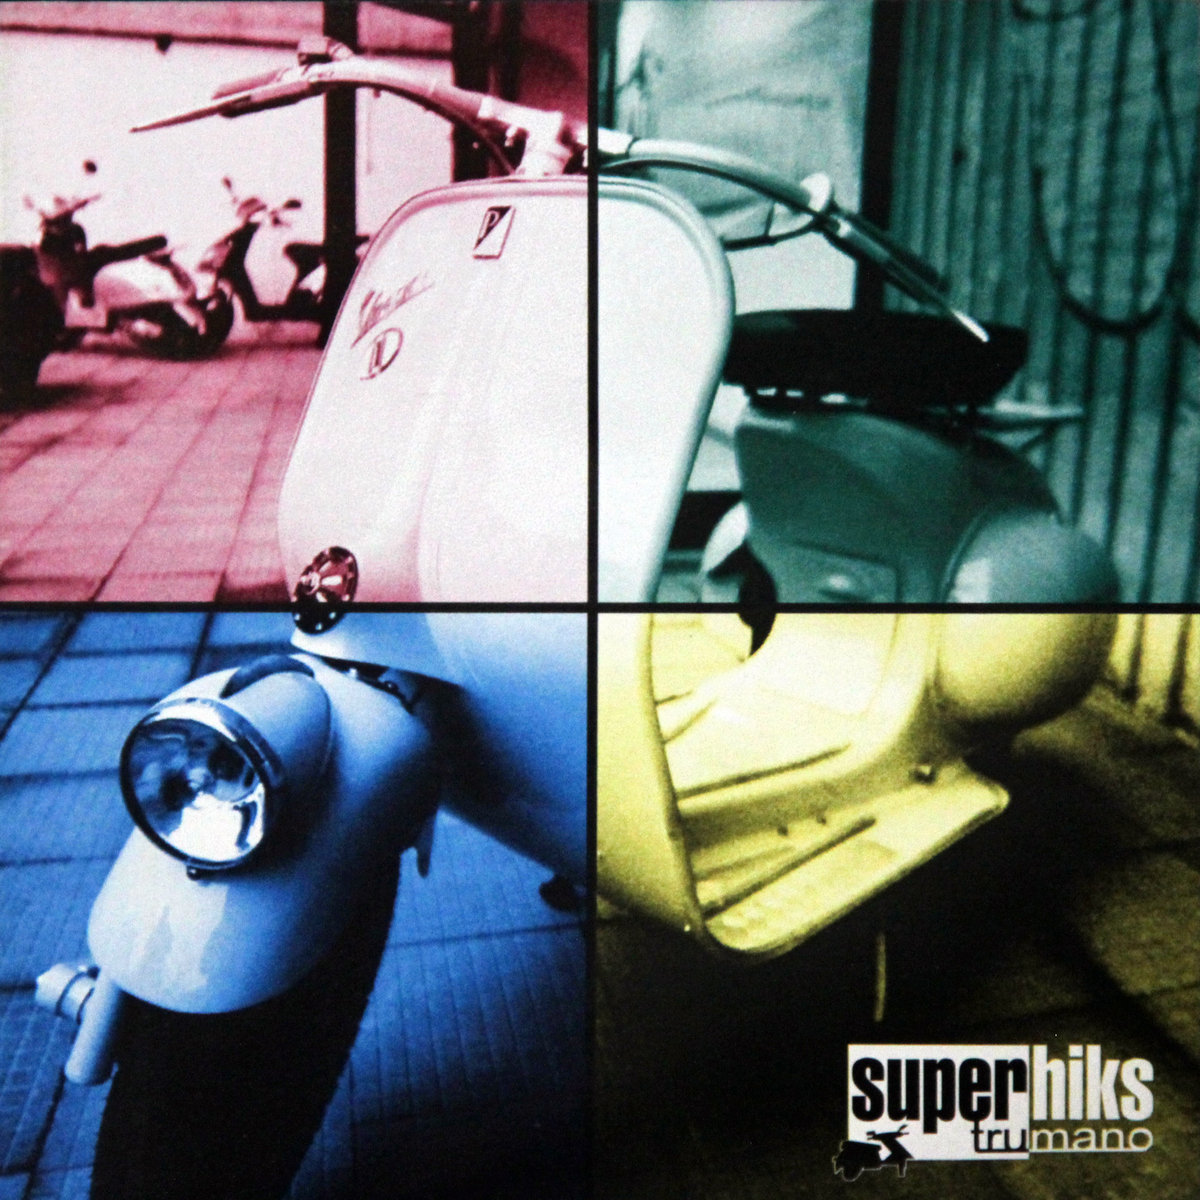 Superhiks - Трумано (2003)